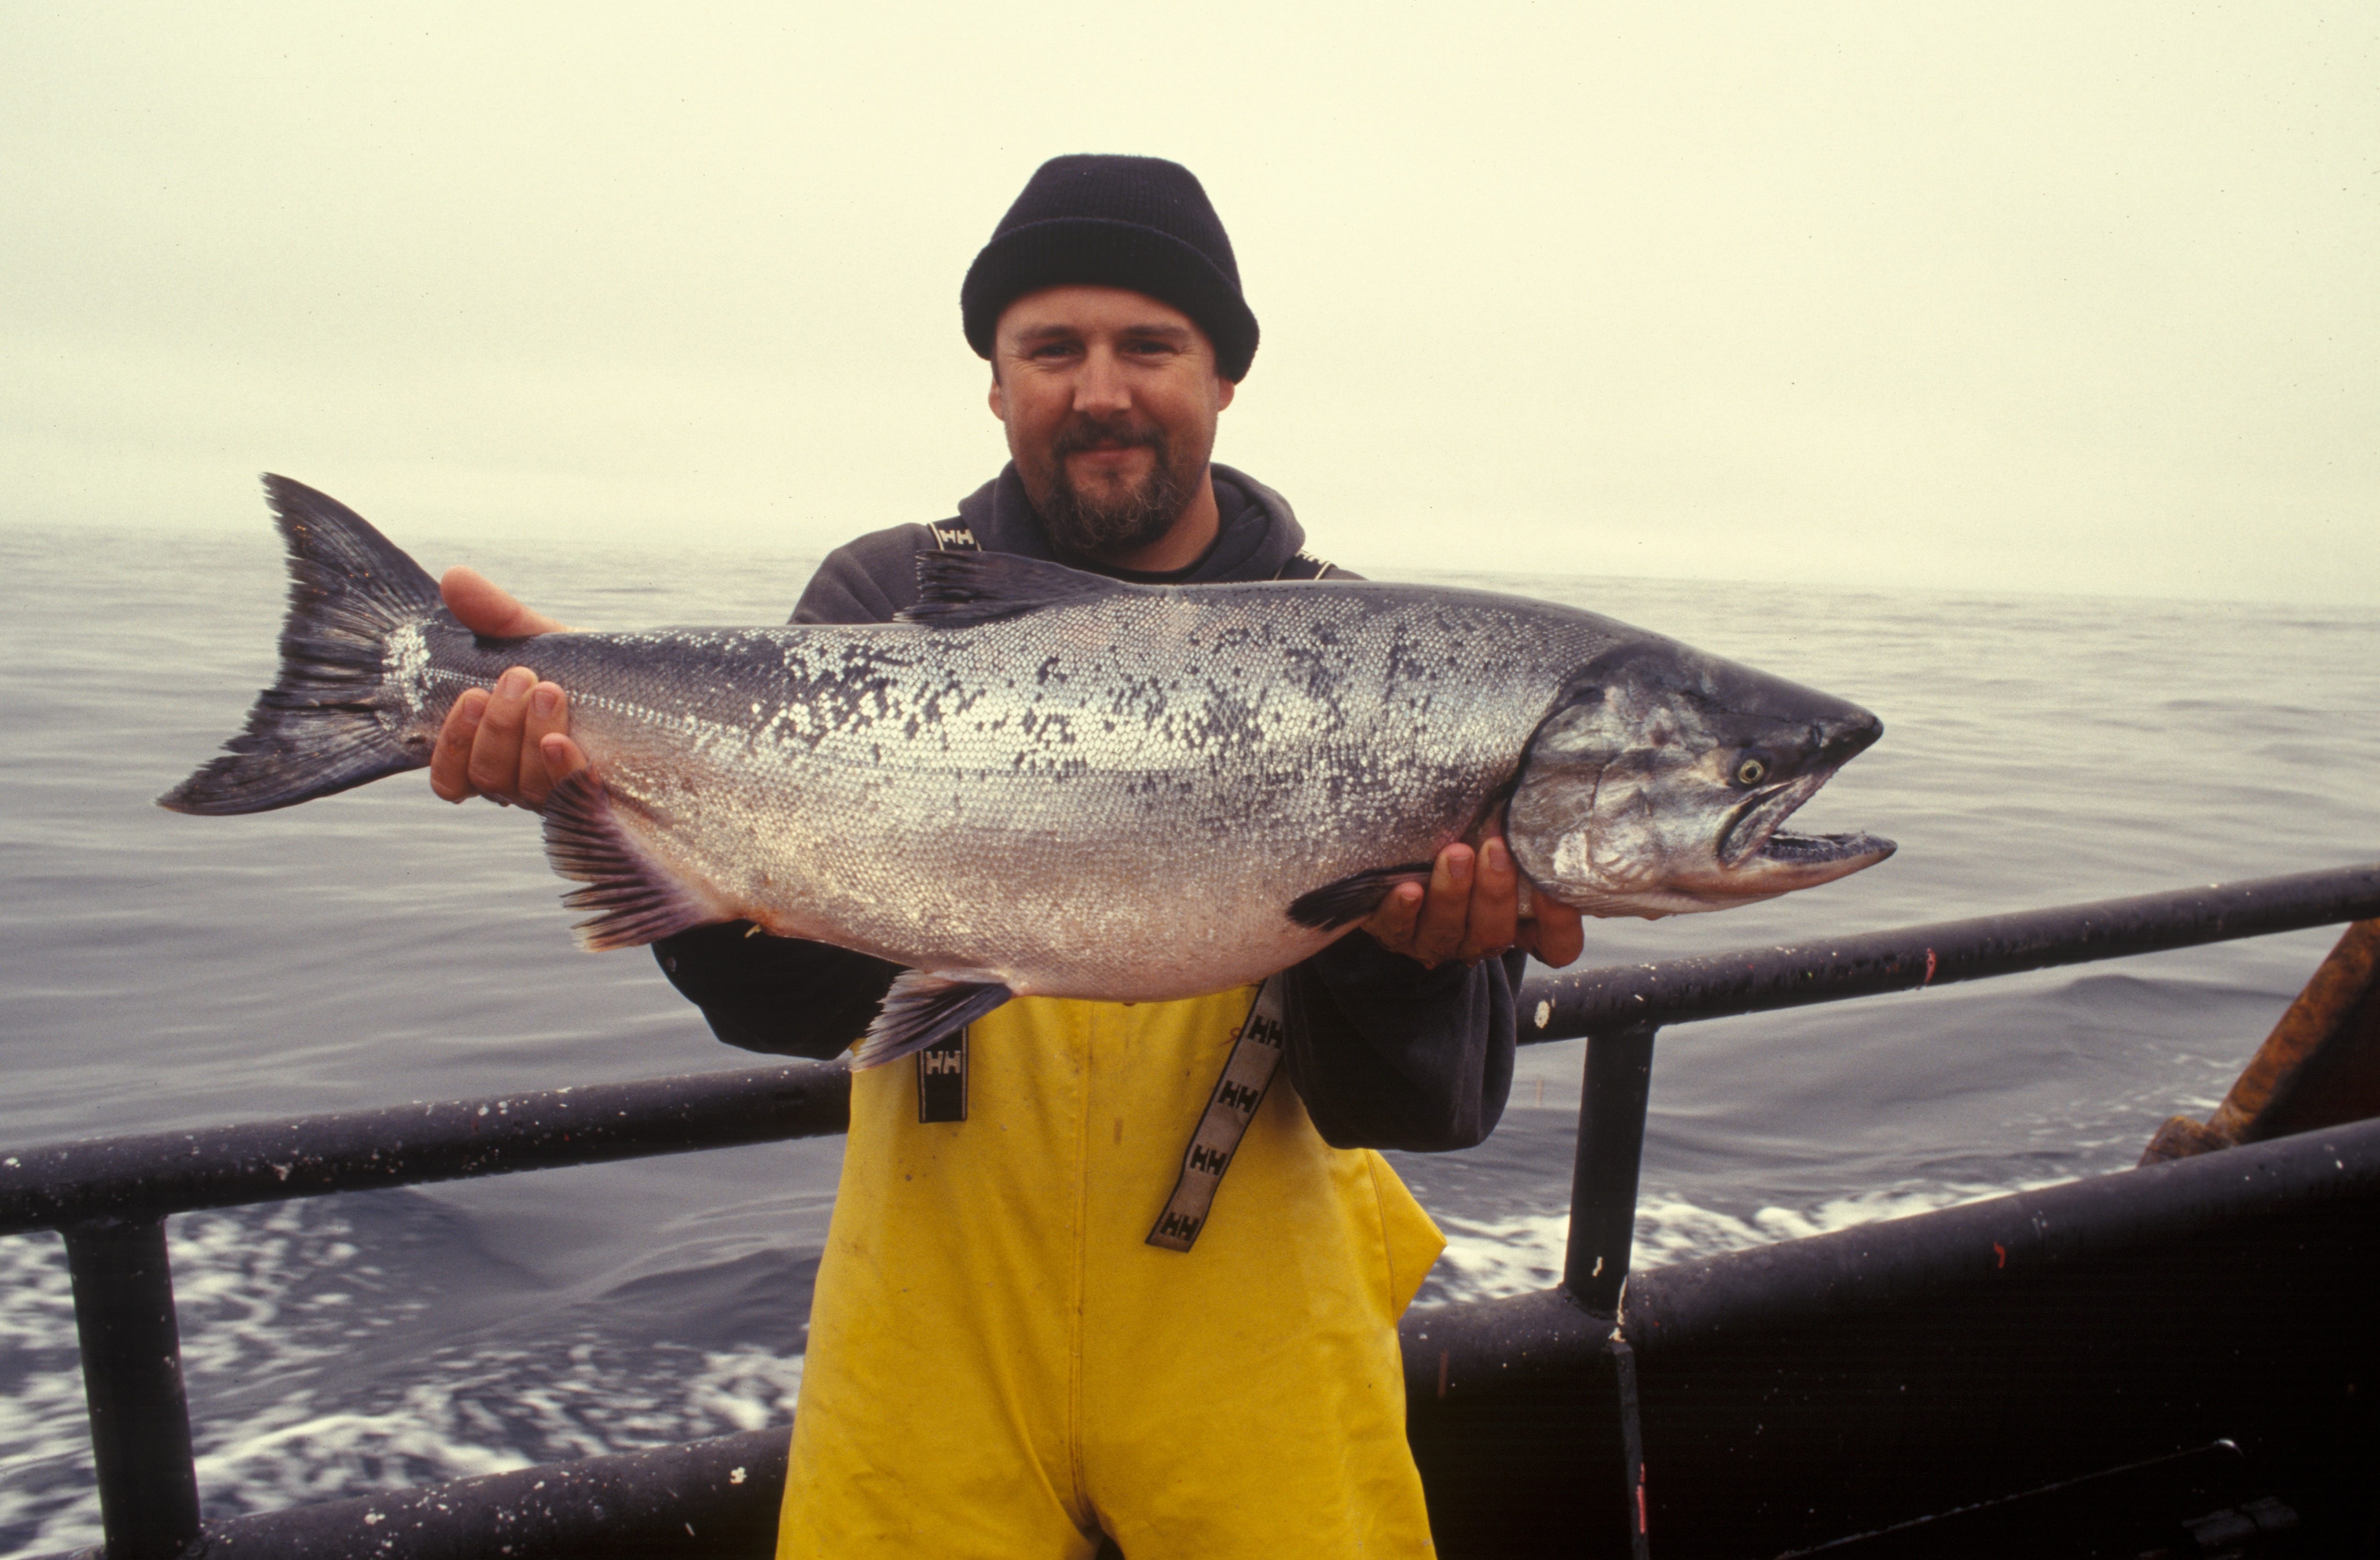 Difficult and dangerous' work raises health risks for Alaska salmon  fishermen